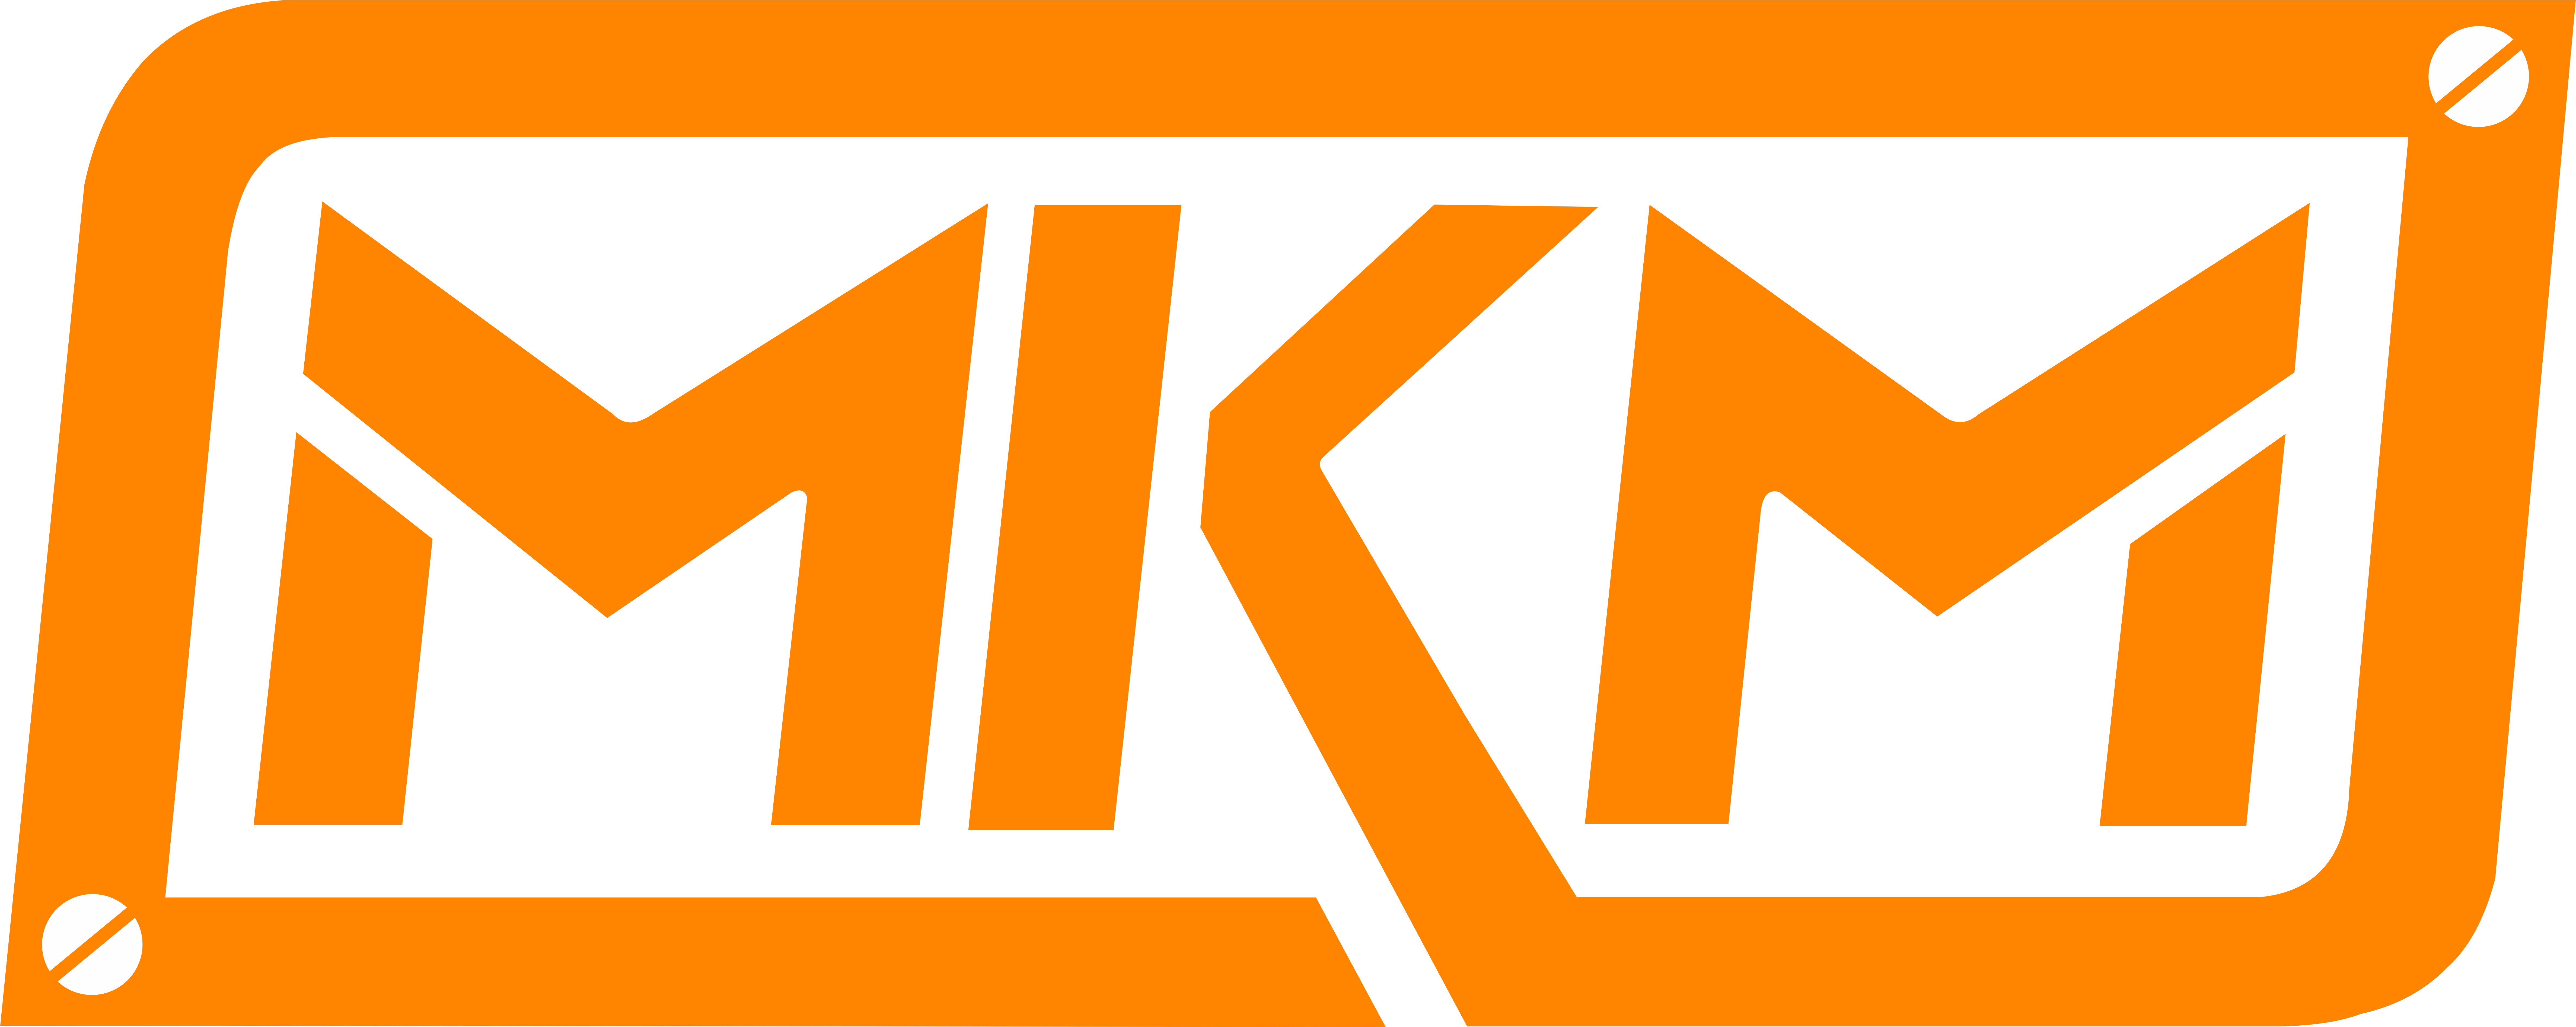 mkm